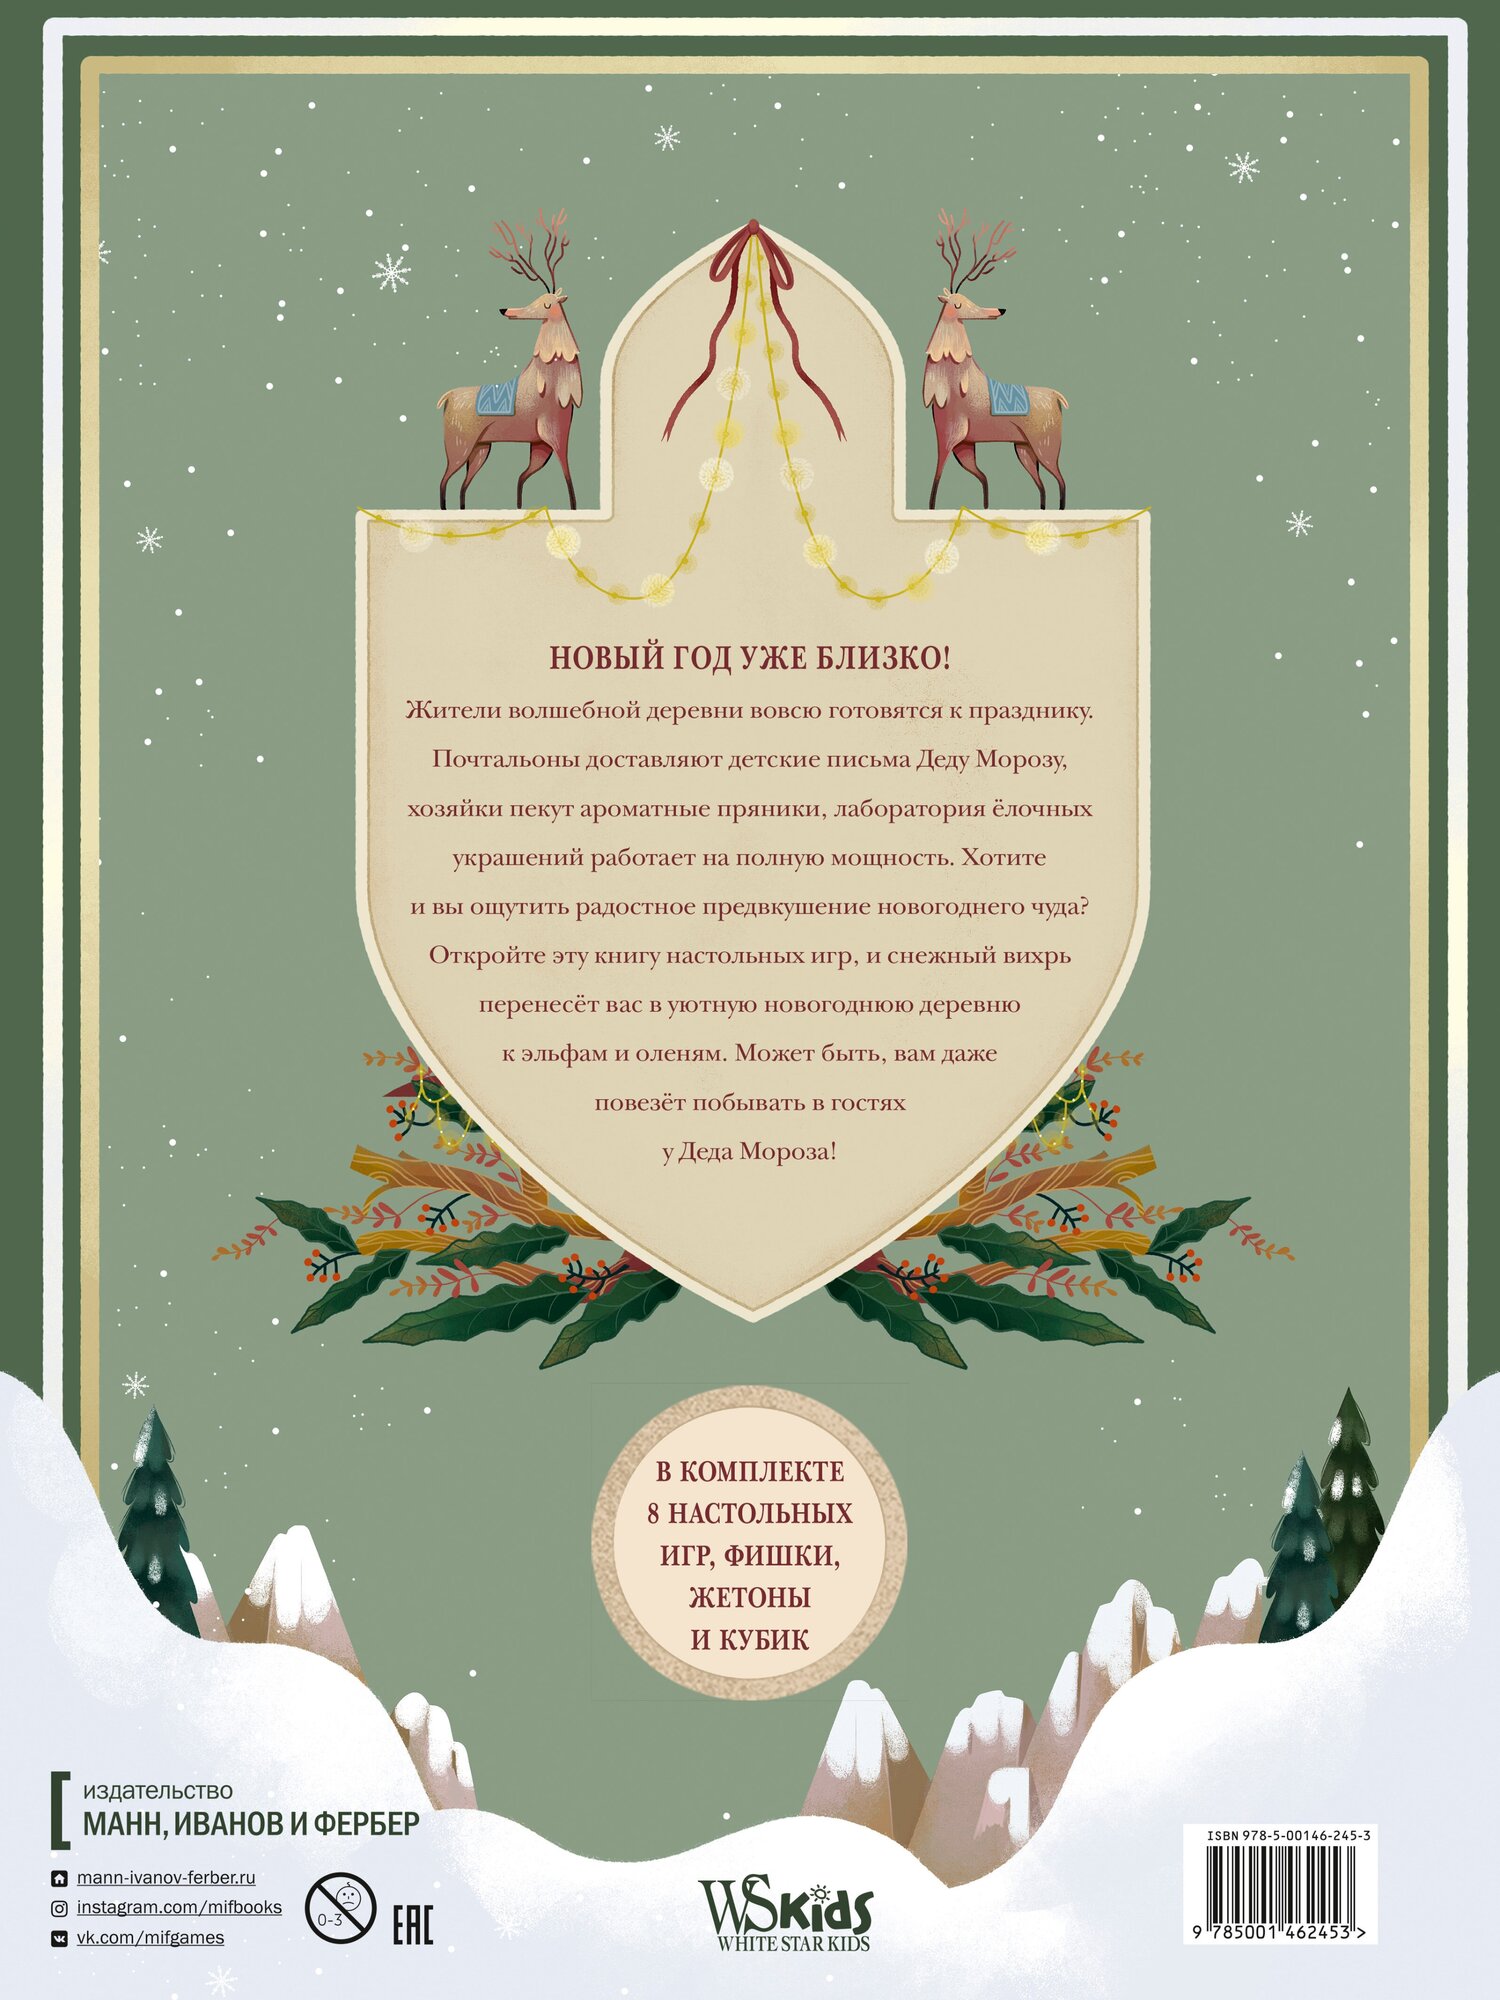 Зимняя книга волшебных игр. Восемь настольных игр, которые перенесут вас в новогоднюю сказку - фото №12